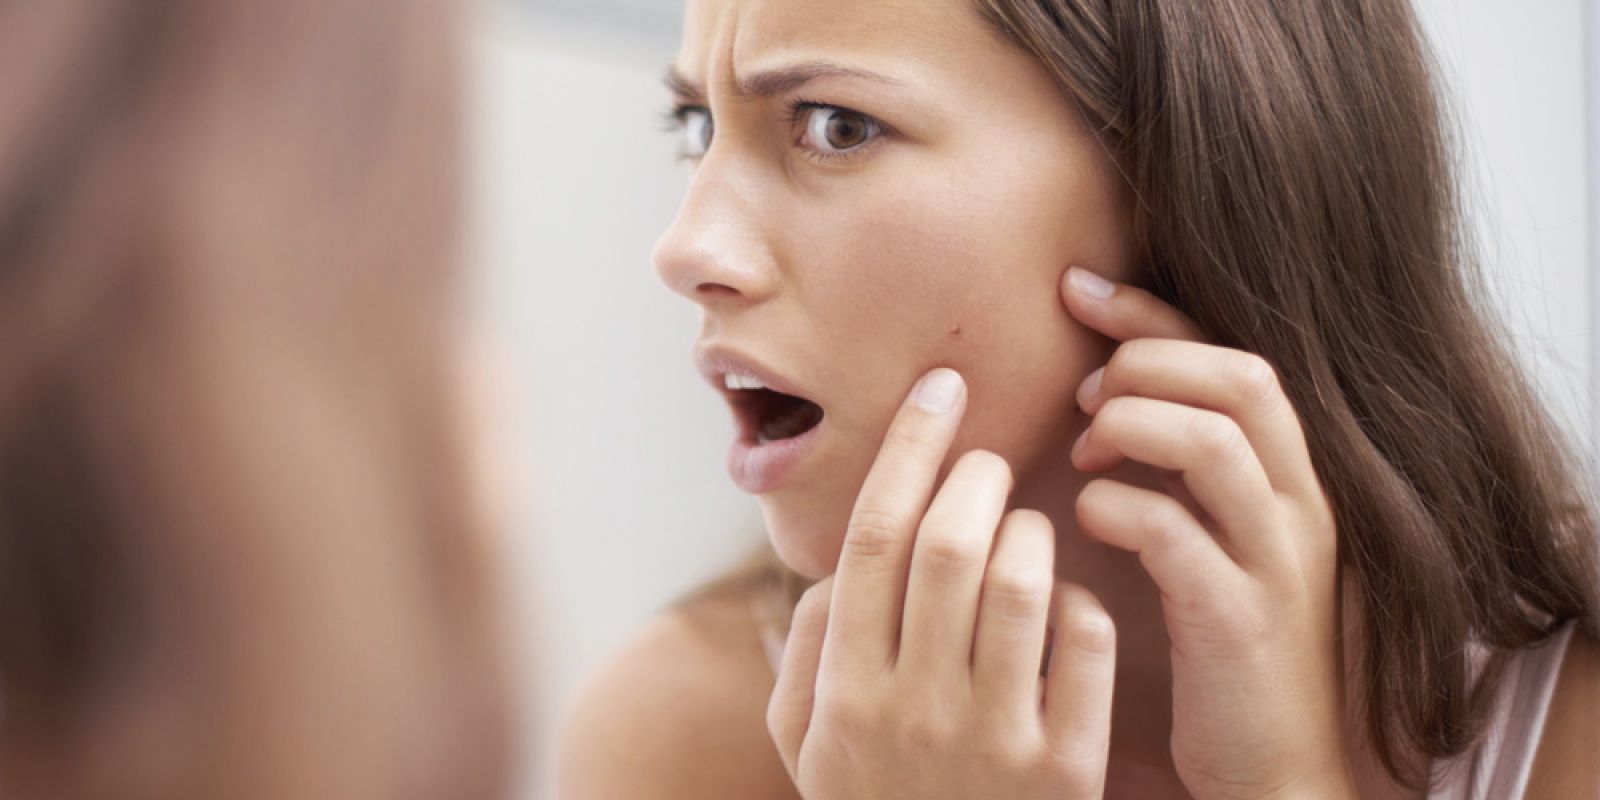 De ce tot mai multi adulti dezvolta acnee?